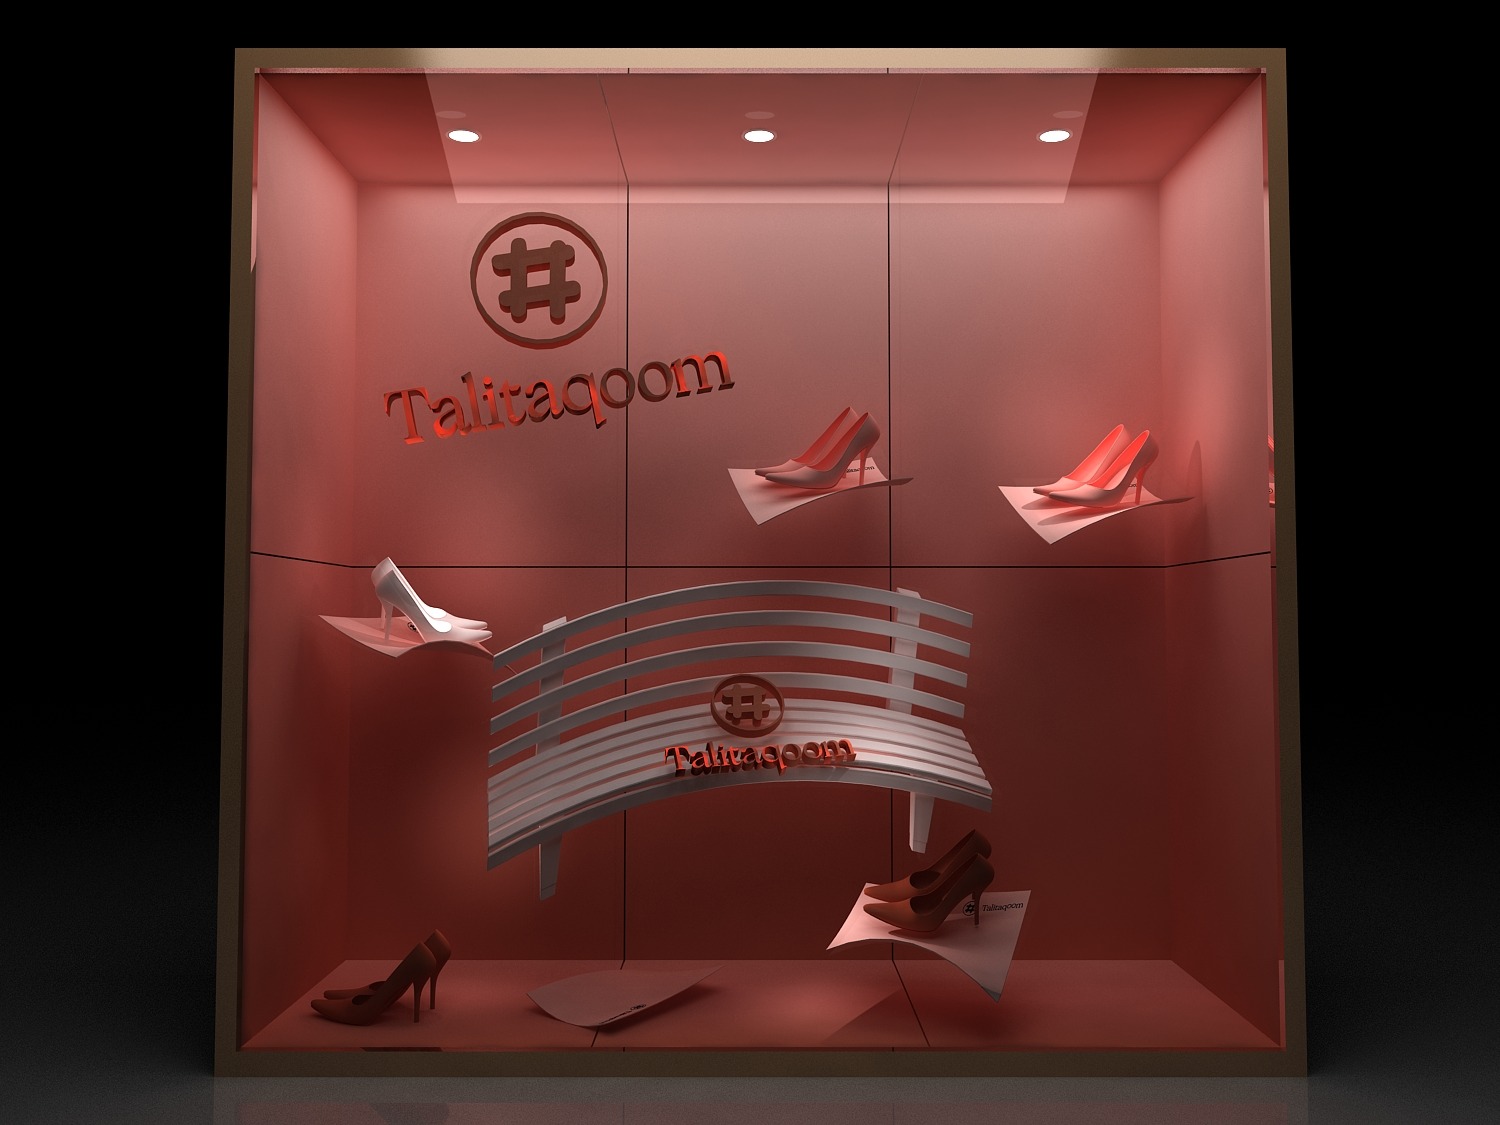 个性鞋店展示架装修效果图 – 设计本装修效果图